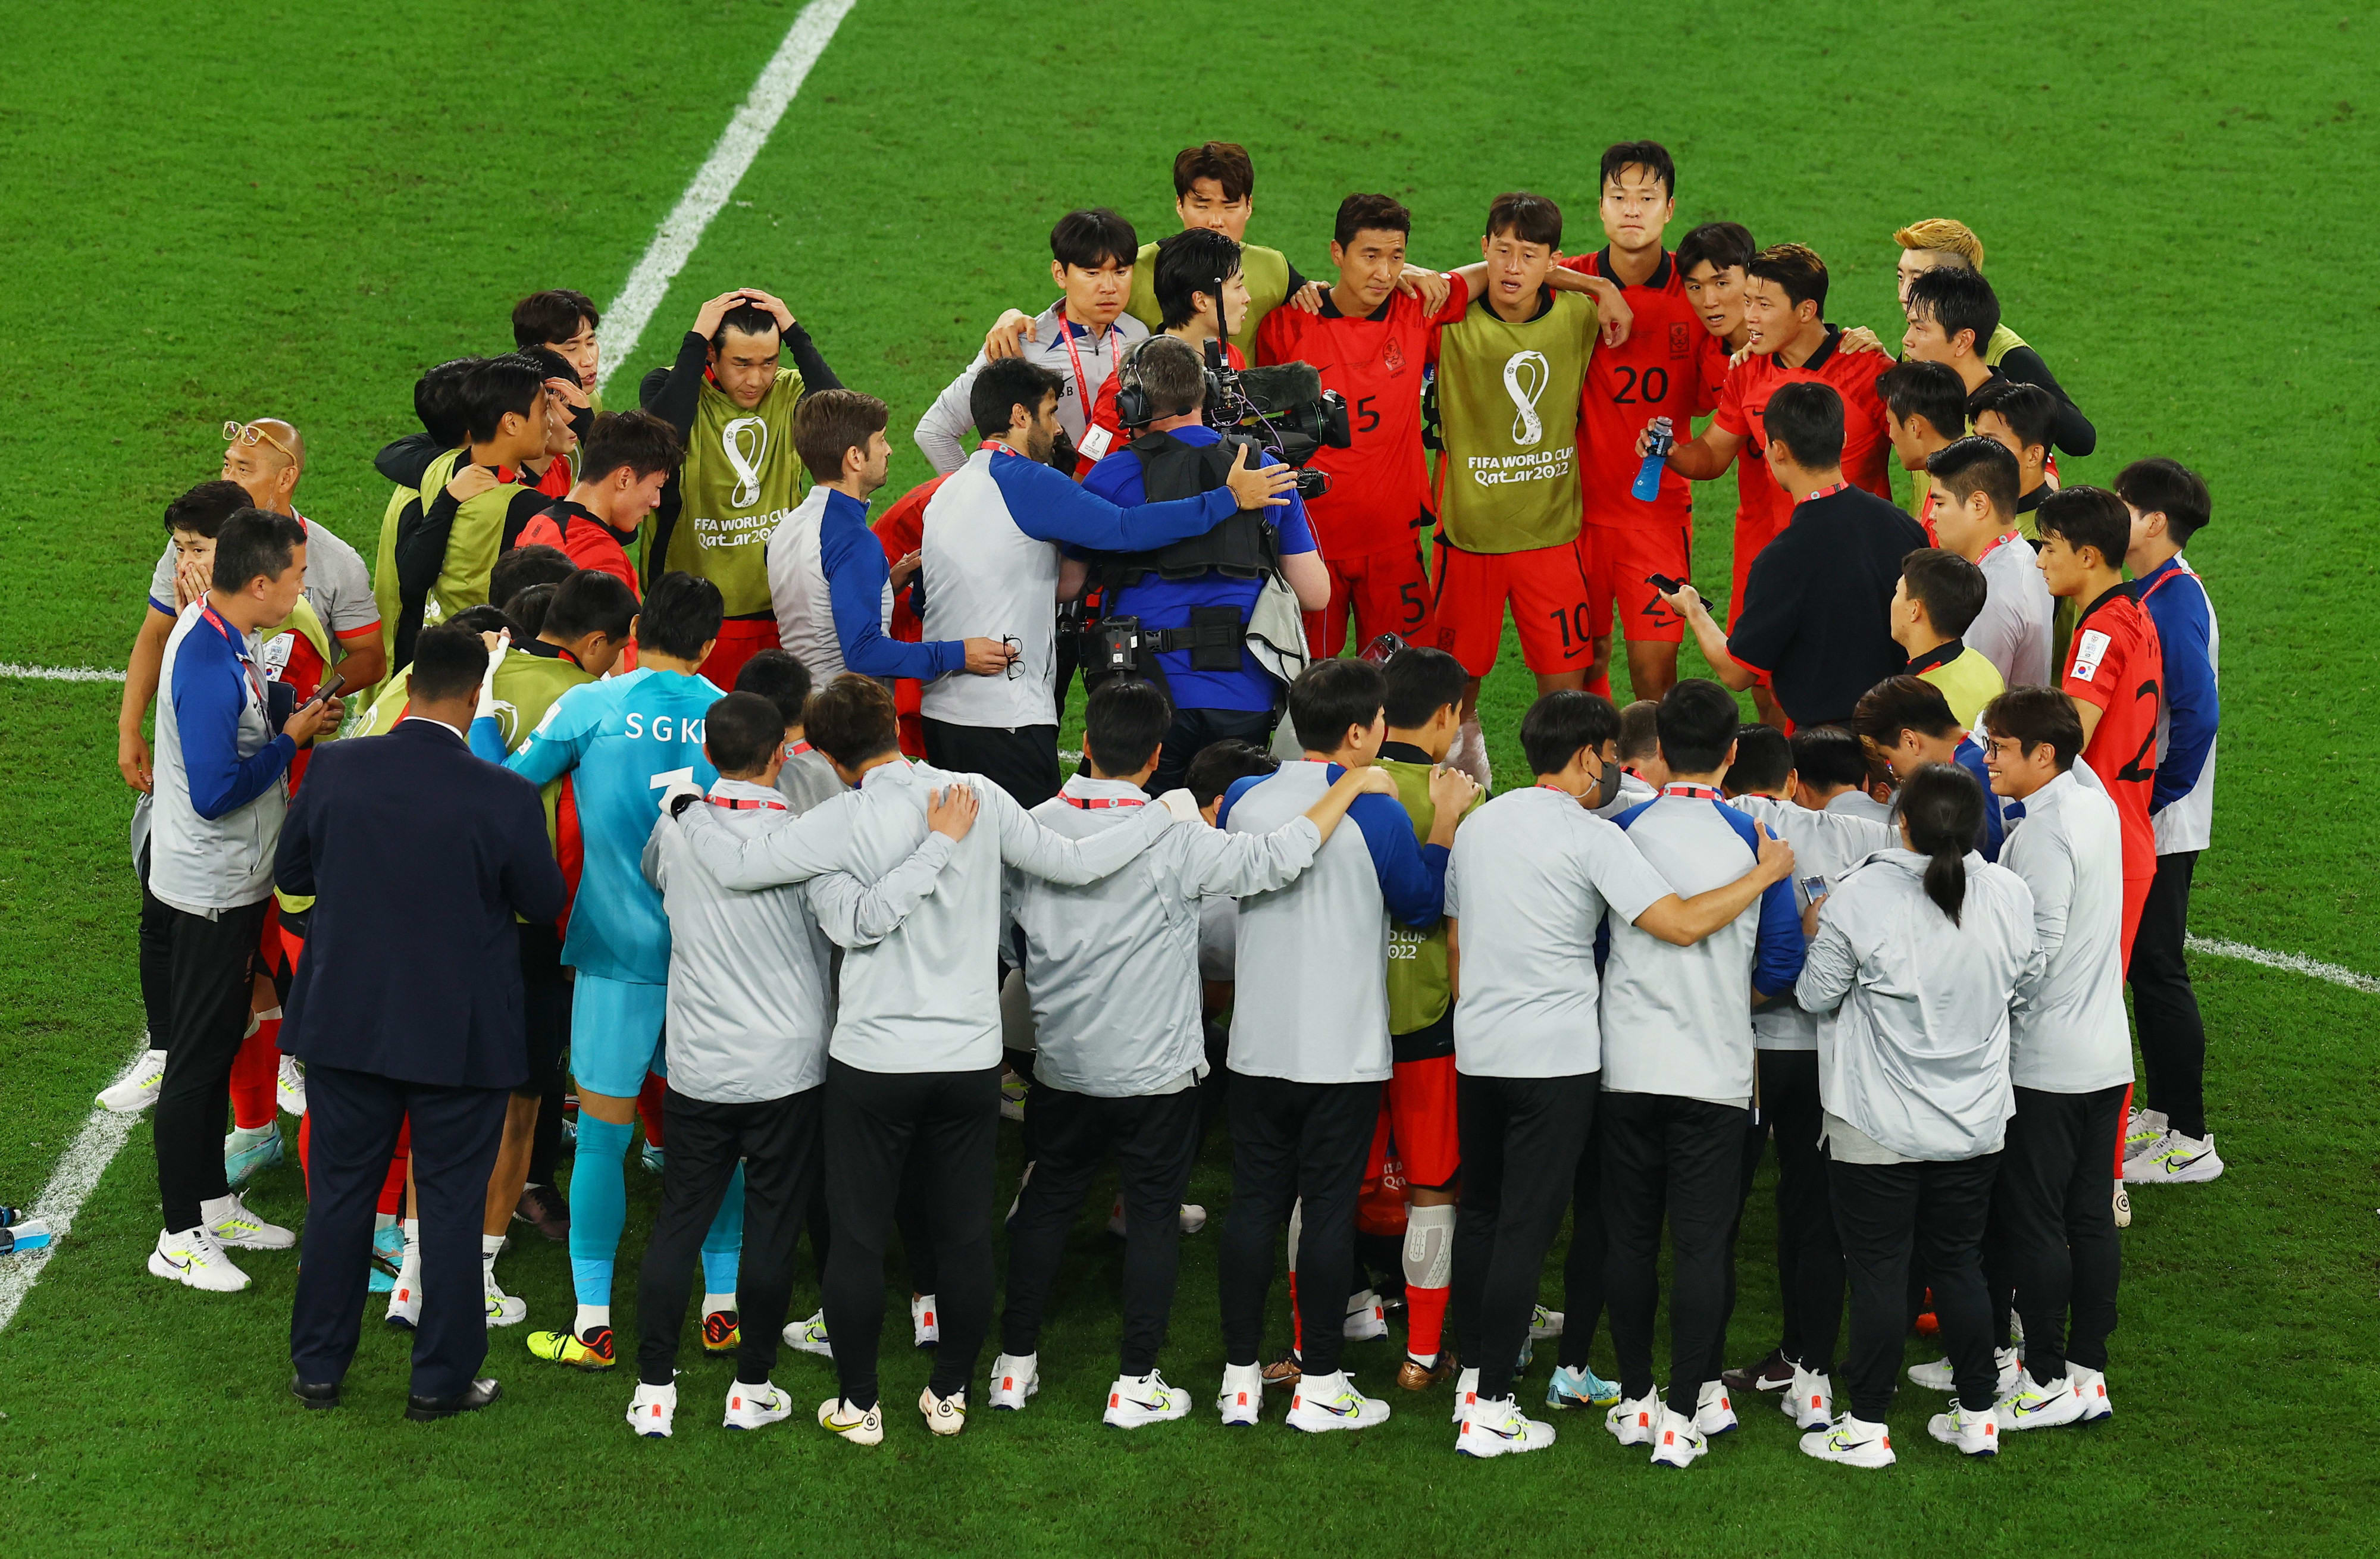 שחקני נבחרת דרום קוריאה ממתינים לשריקת הסיום במשחק בין גאנה לאורוגוואי